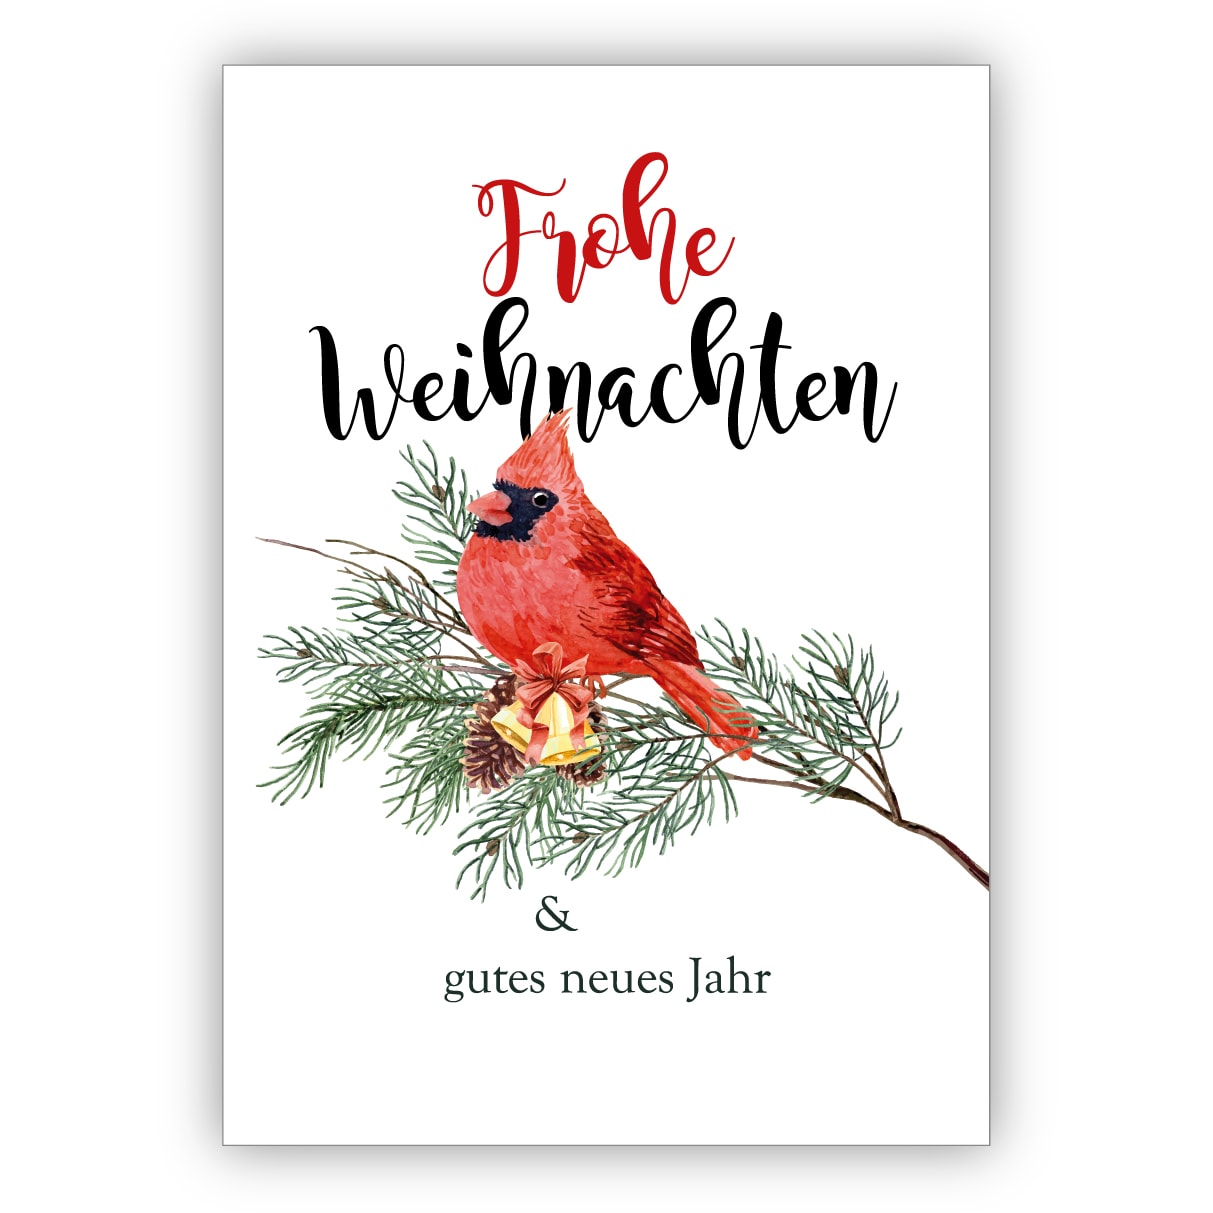 Edle klassische Weihnachtskarte mit rotem Vogel auf Kiefernzweig: Frohe Weihnachten & gute neues Jahr